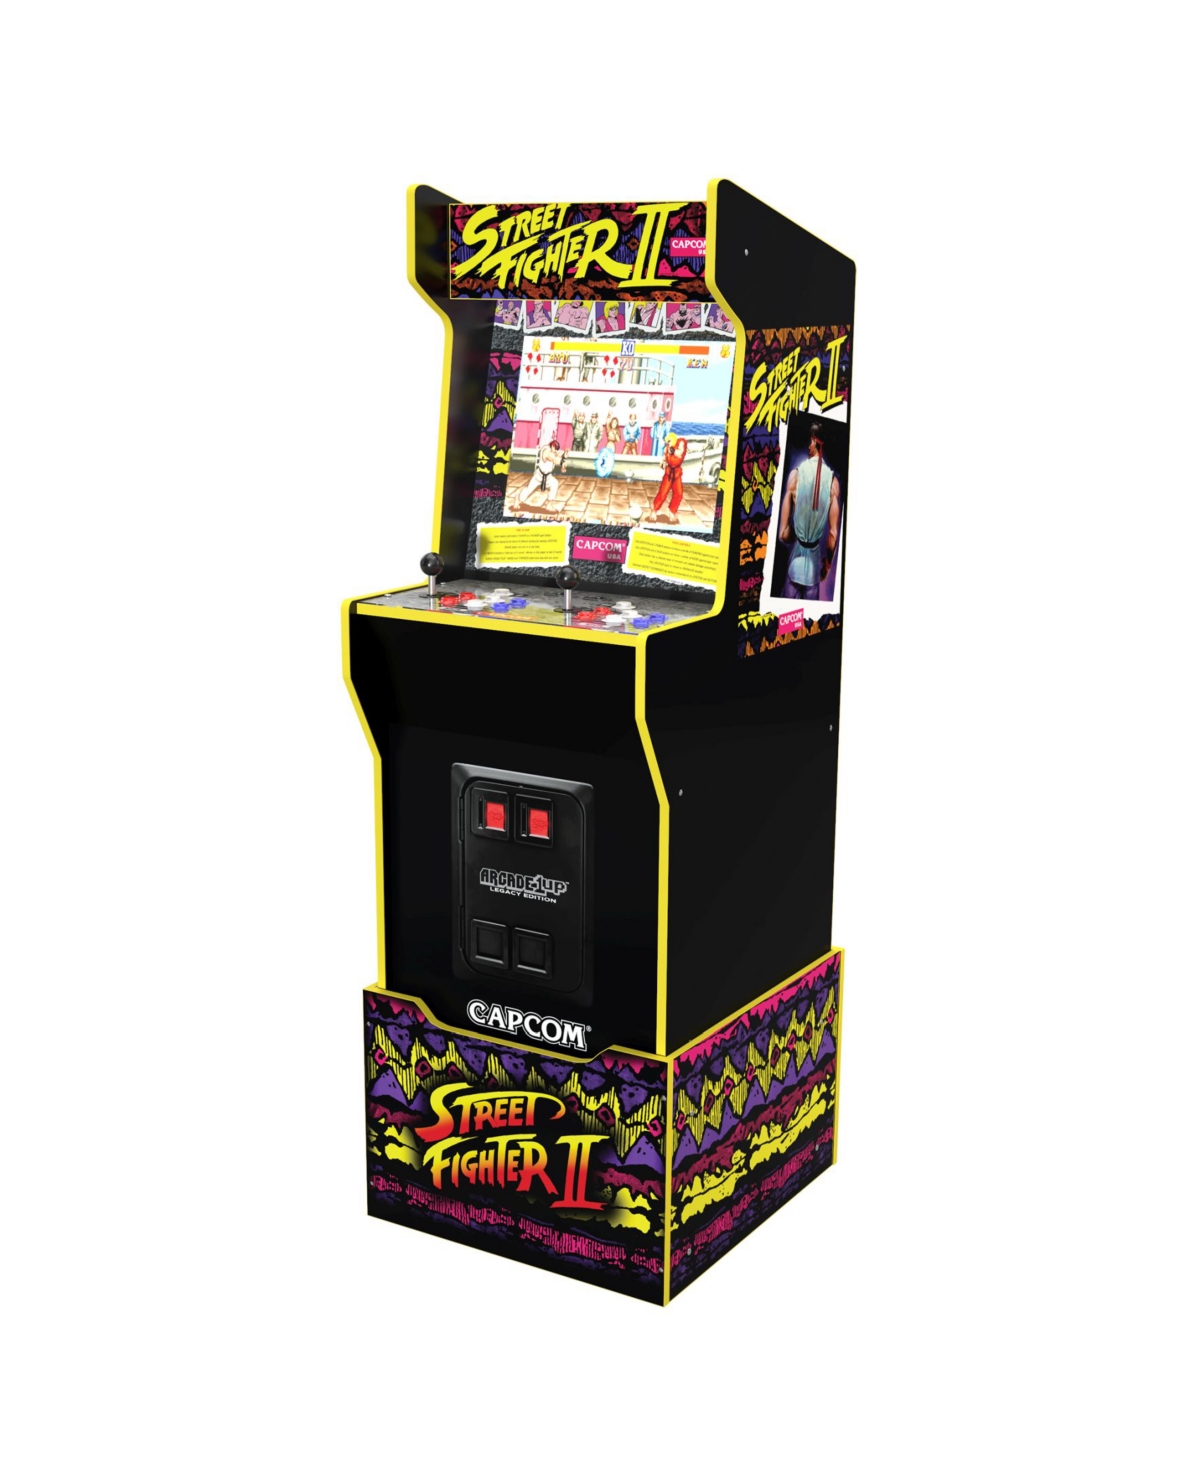 Arcade 1UP Streetfighter Capcom Legacy Arcade Game